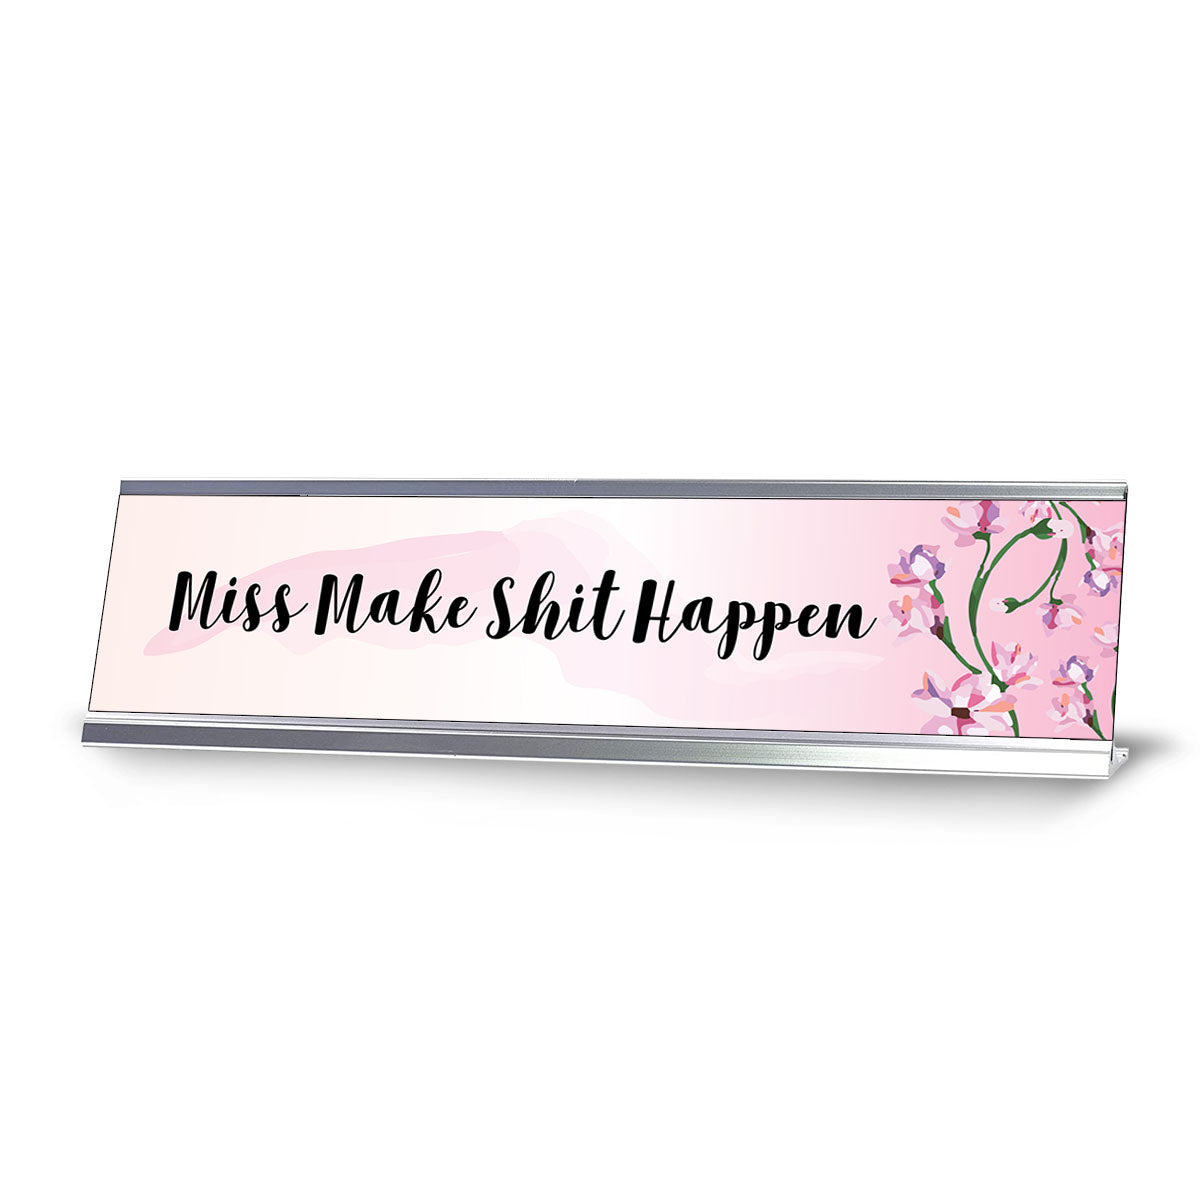 Miss Make Shit Happen Silver, Designer Series Desk Sign (2 x 8")